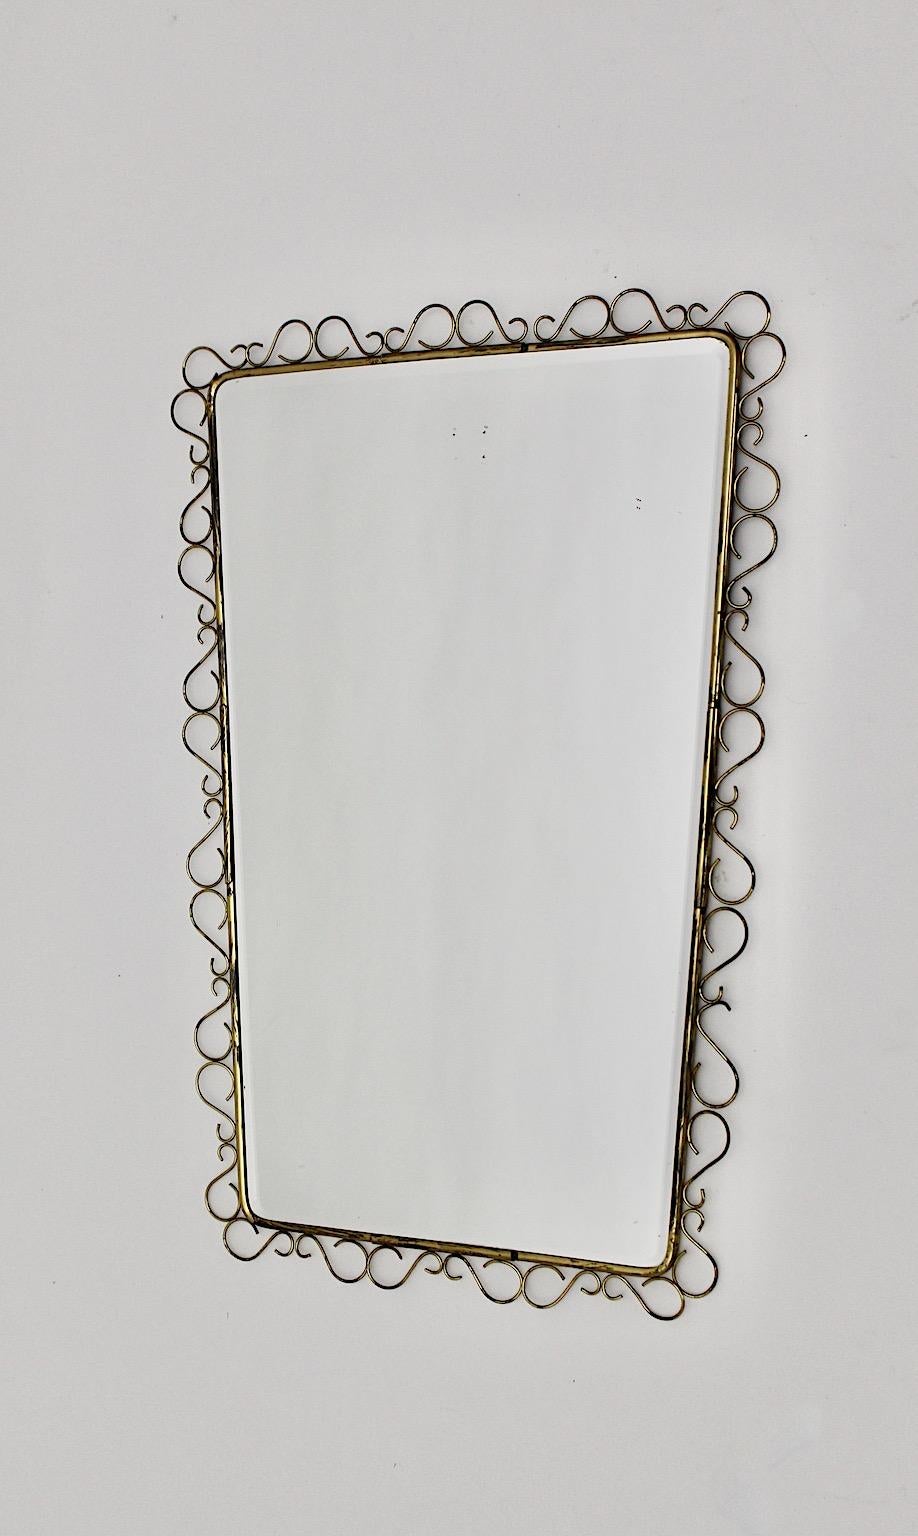 Miroir mural ou miroir de sol vintage Mid Century Modern en laiton et verre miroir des années 1950 en Italie.
Un miroir mural étonnant avec des boucles délicates en laiton avec un cadre en laiton de forme rectangulaire conique.
Les boucles délicates